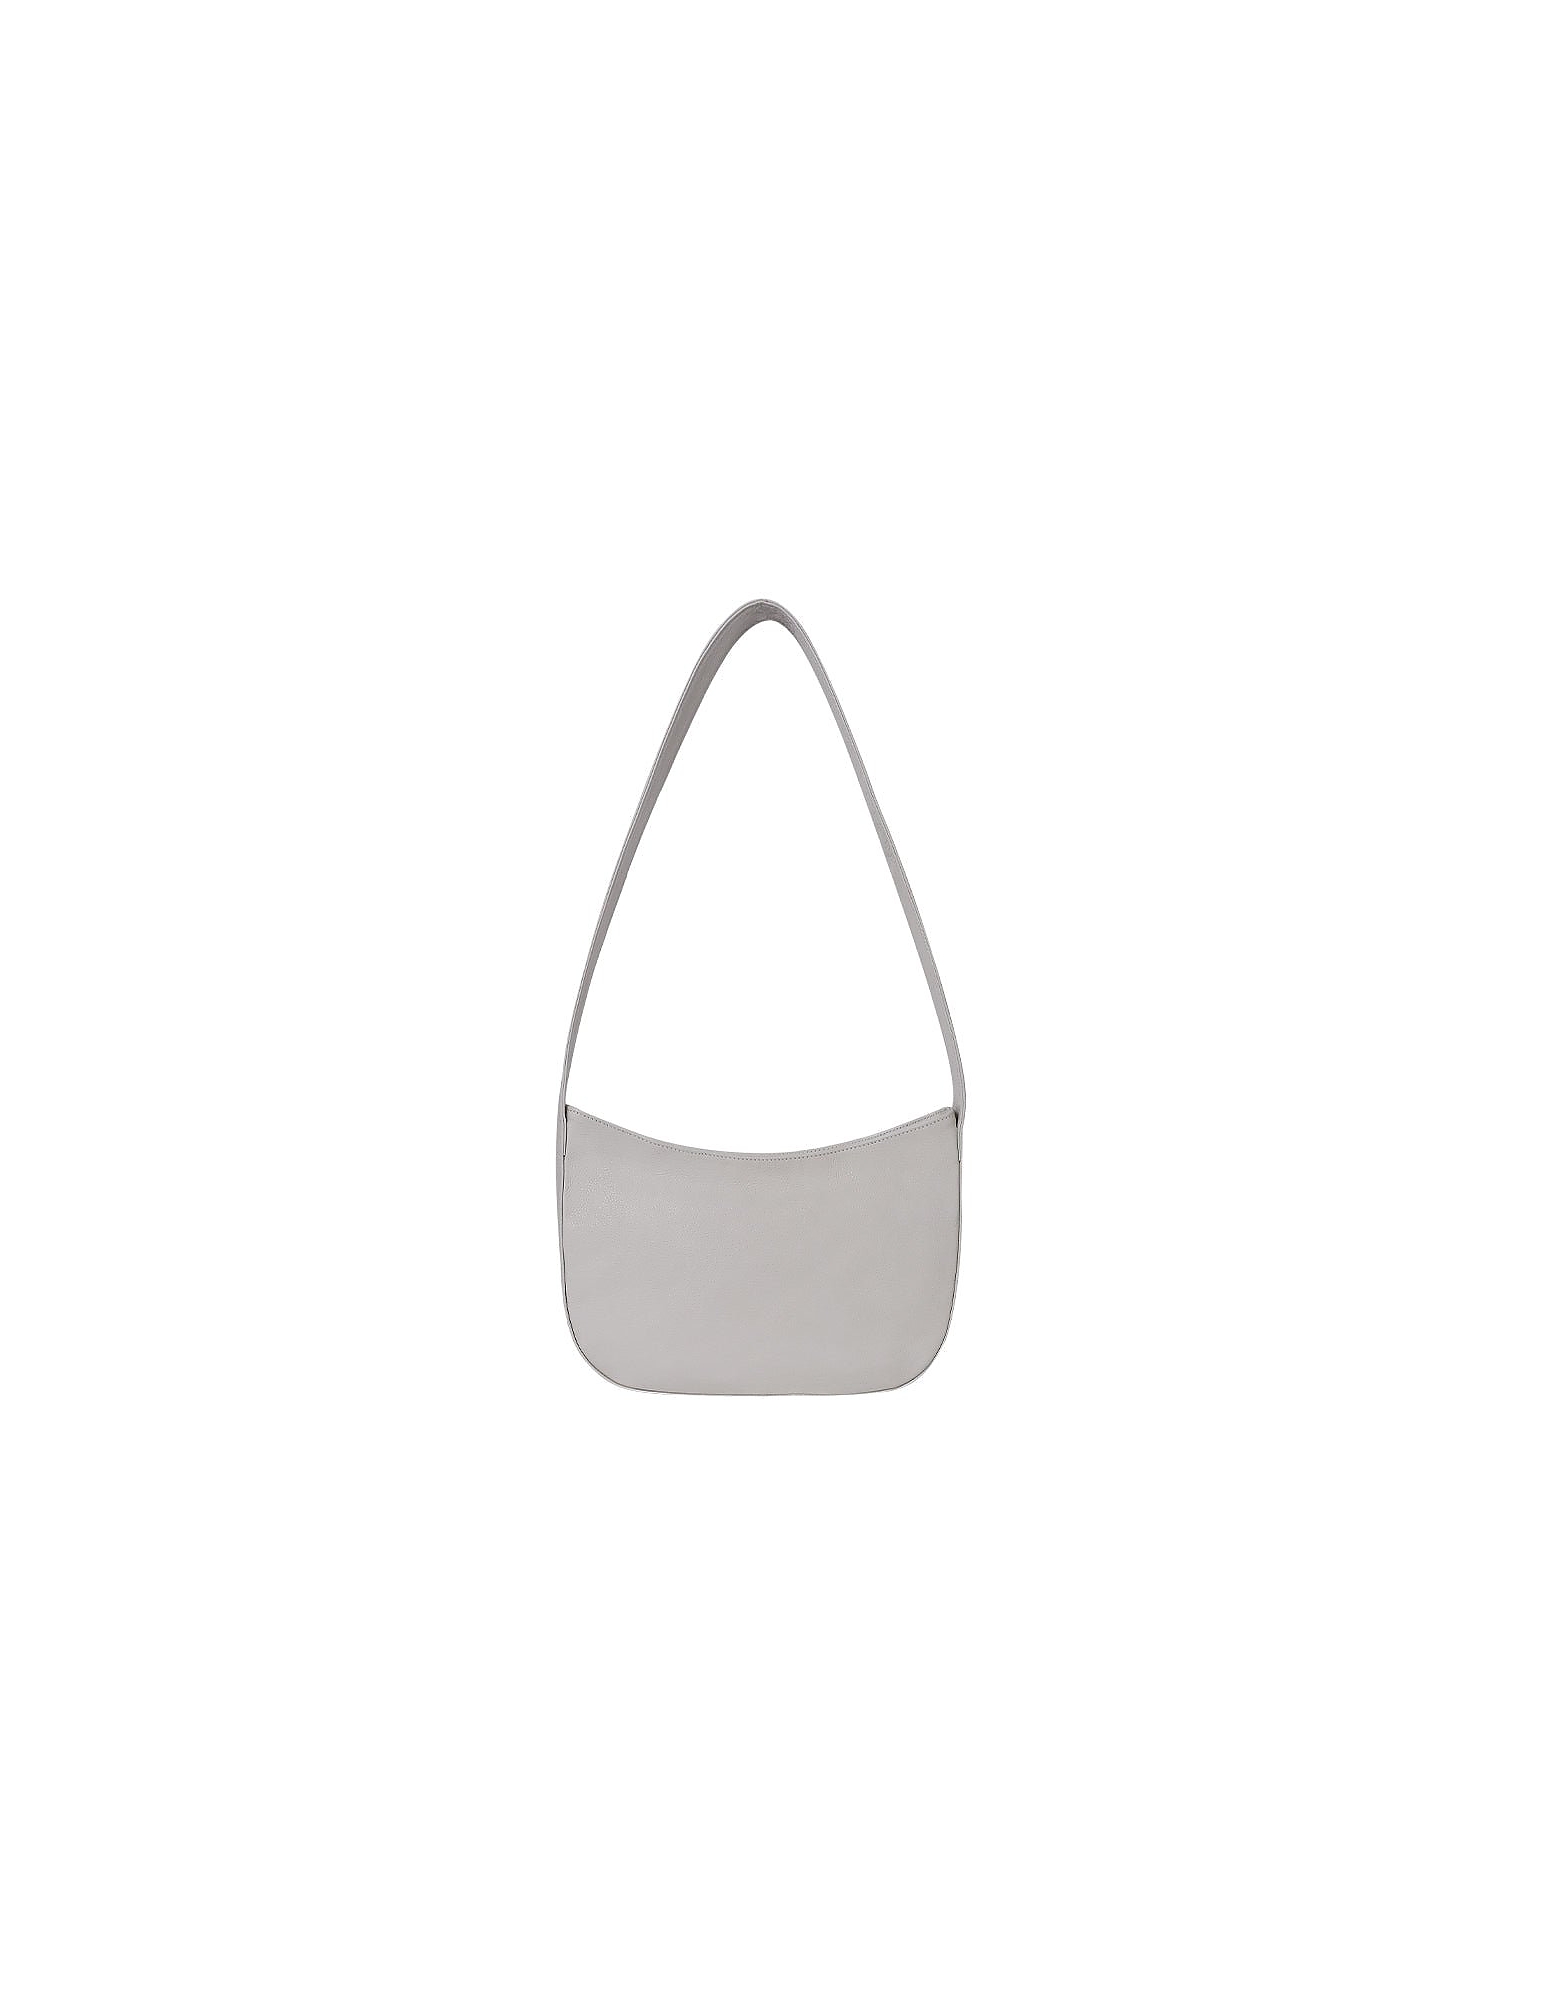 Brussosa Designer Handbags Leto - Shoulder Bag In Blanc